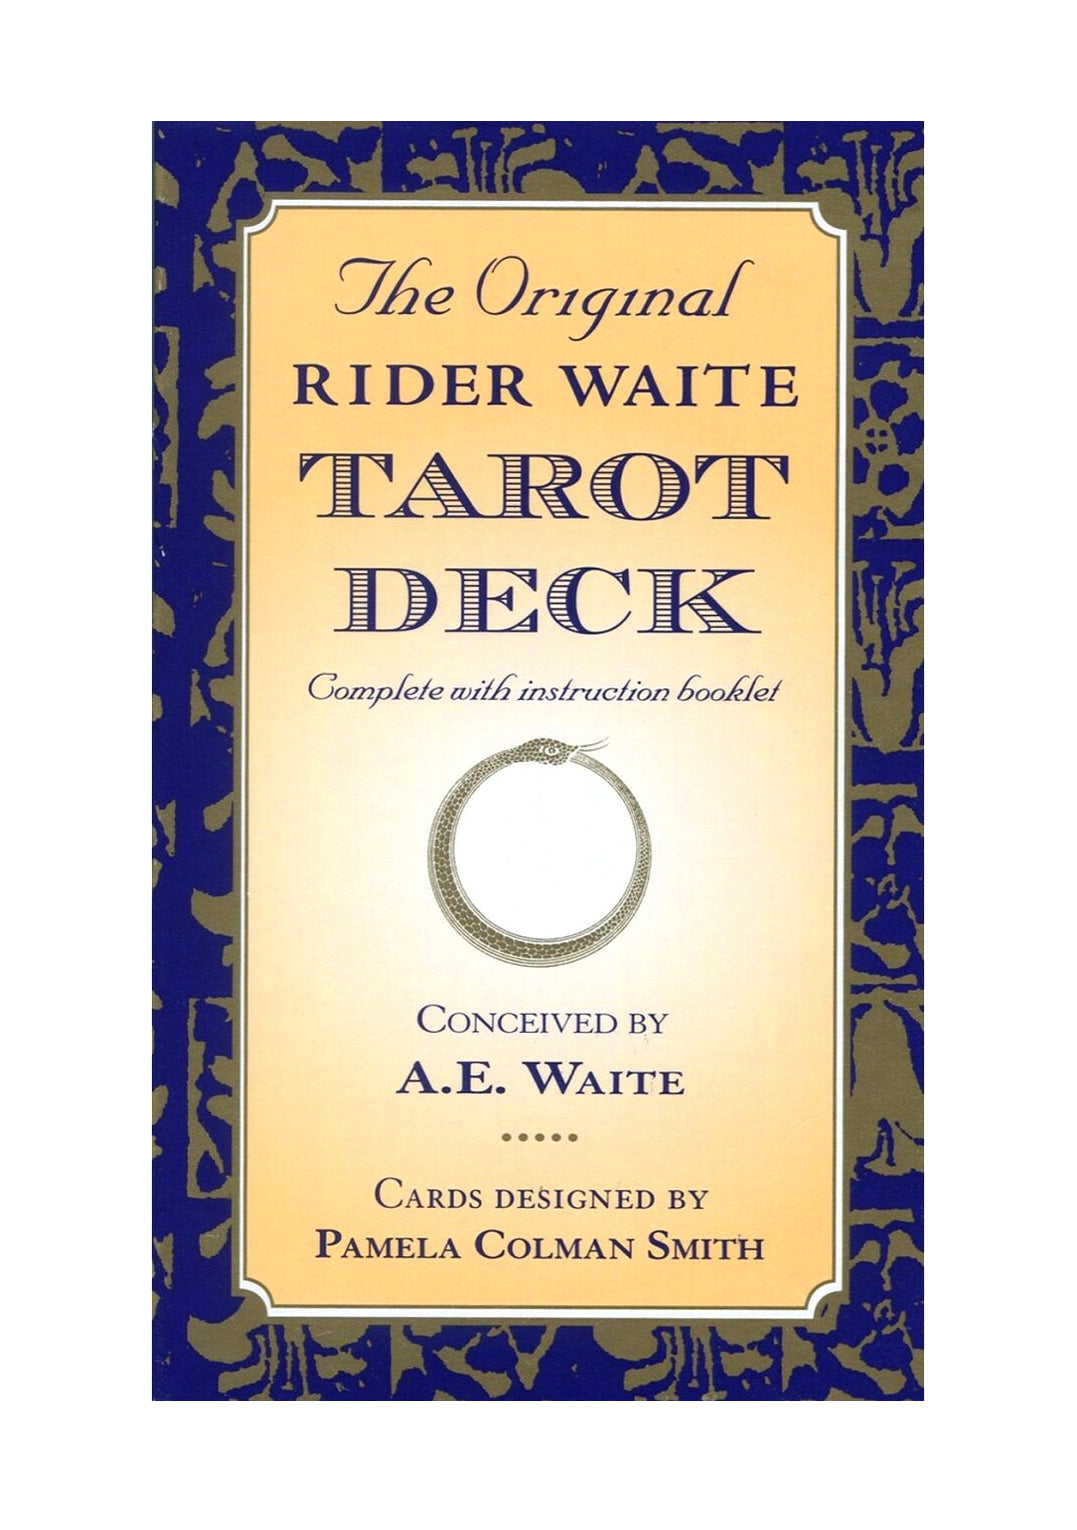 Original Rider Waite Tarot Deck By A. E. WAITE